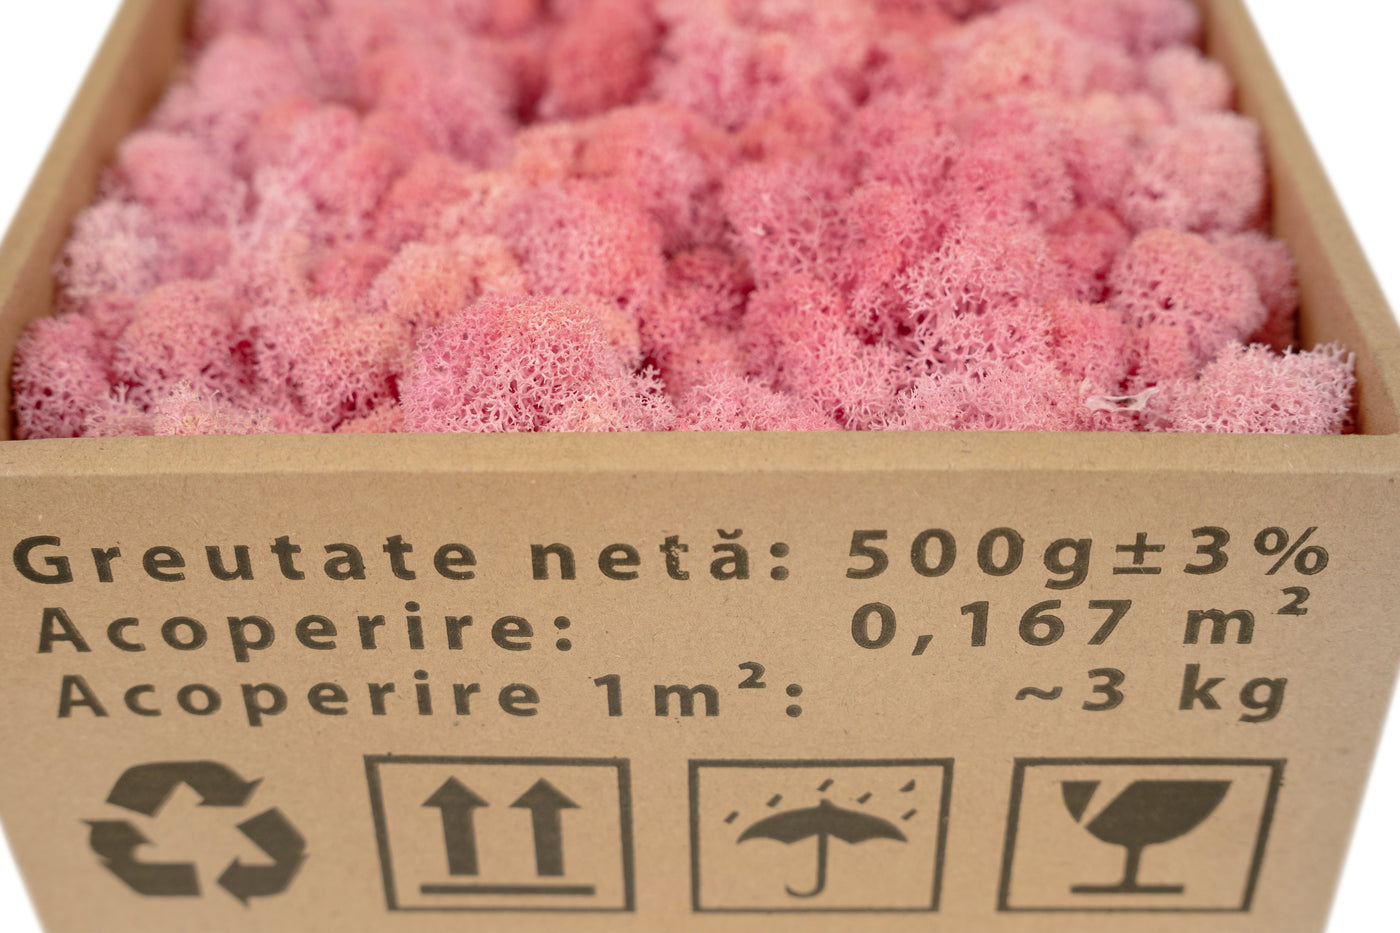 Licheni curatati si fara radacina conservati 500g NET, calitate ULTRA PREMIUM, roz deschis RR21